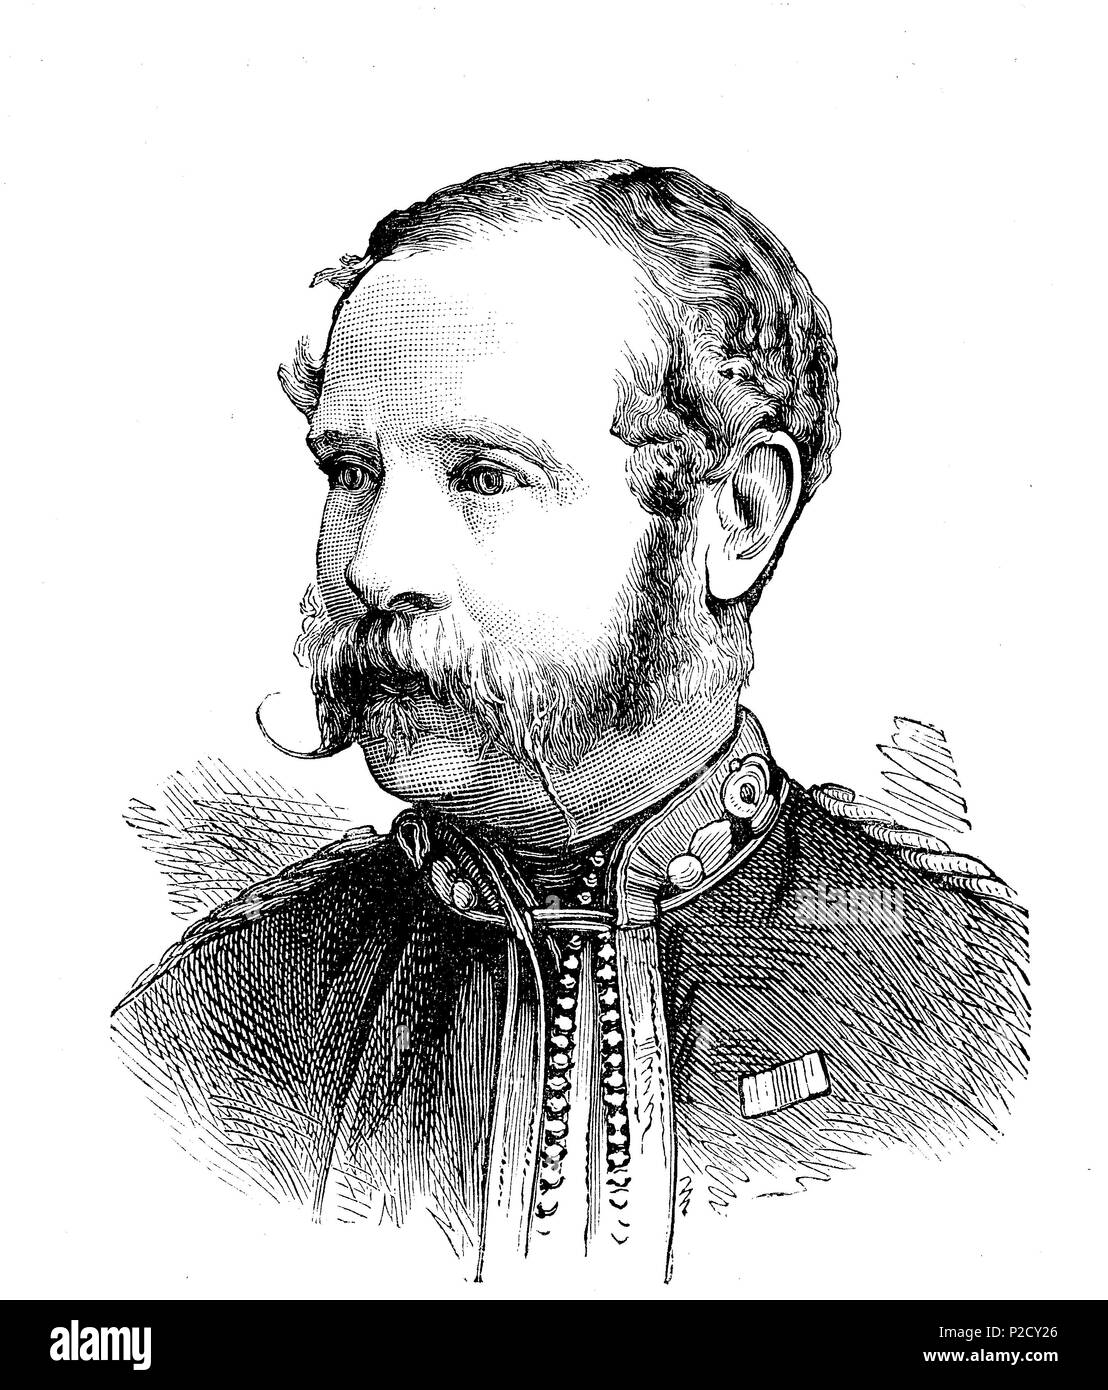 Sir James Braithwaite Peile, 1833 - 1906, war ein britischer Administrator während des britischen Raj, der als amtierender Gouverneur von Bombay serviert, digitale Reproduktion von einem ursprünglichen Drucken aus dem 19. Jahrhundert verbessert, 1881 Stockfoto